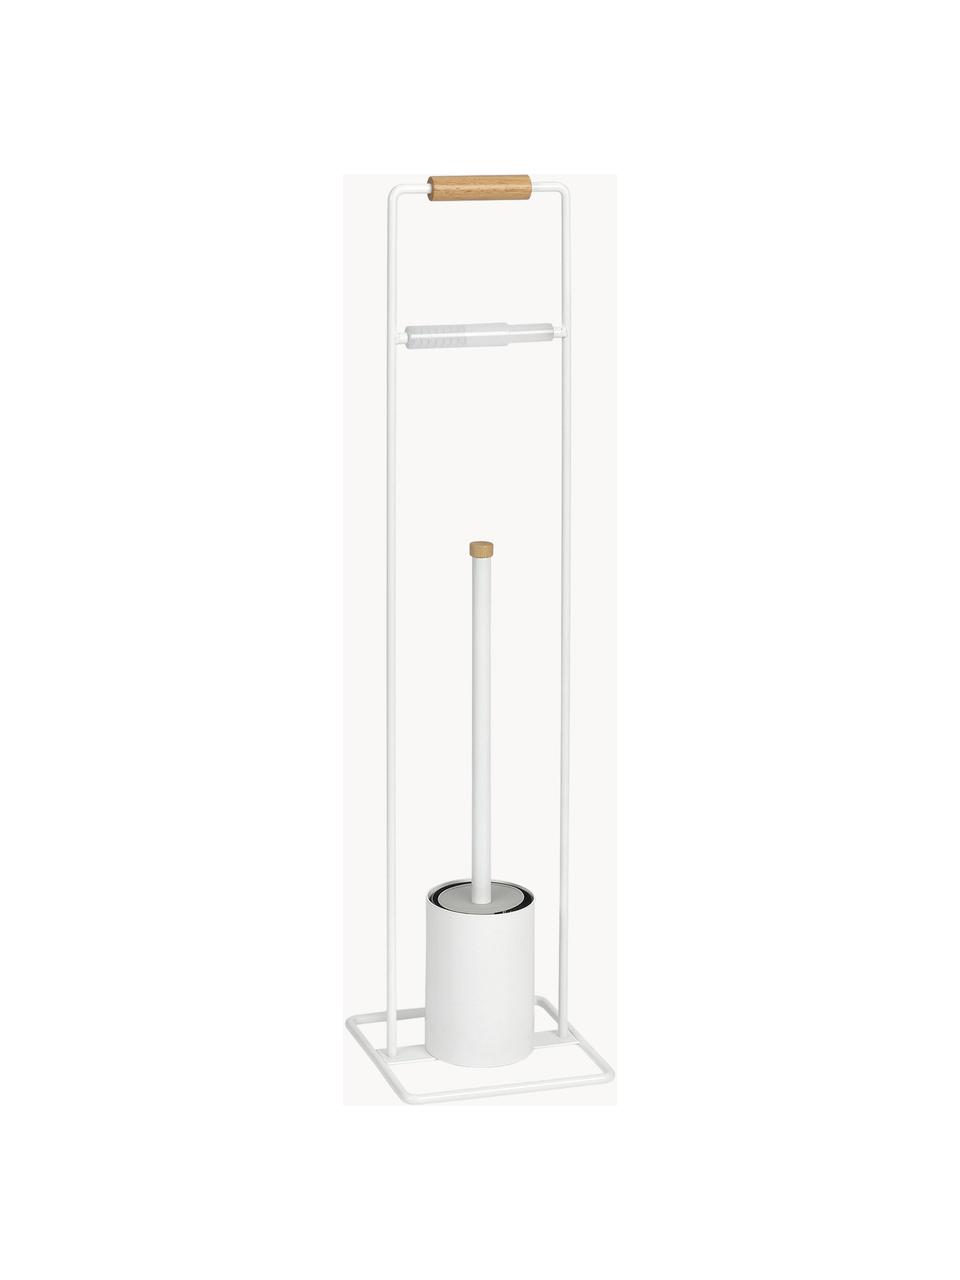 Stojak na papier toaletowy ze szczotką toaletową Barbican, Metal, drewno kauczukowe, lakierowany, Biały, drewno kauczukowe, S 18 x W 72 cm